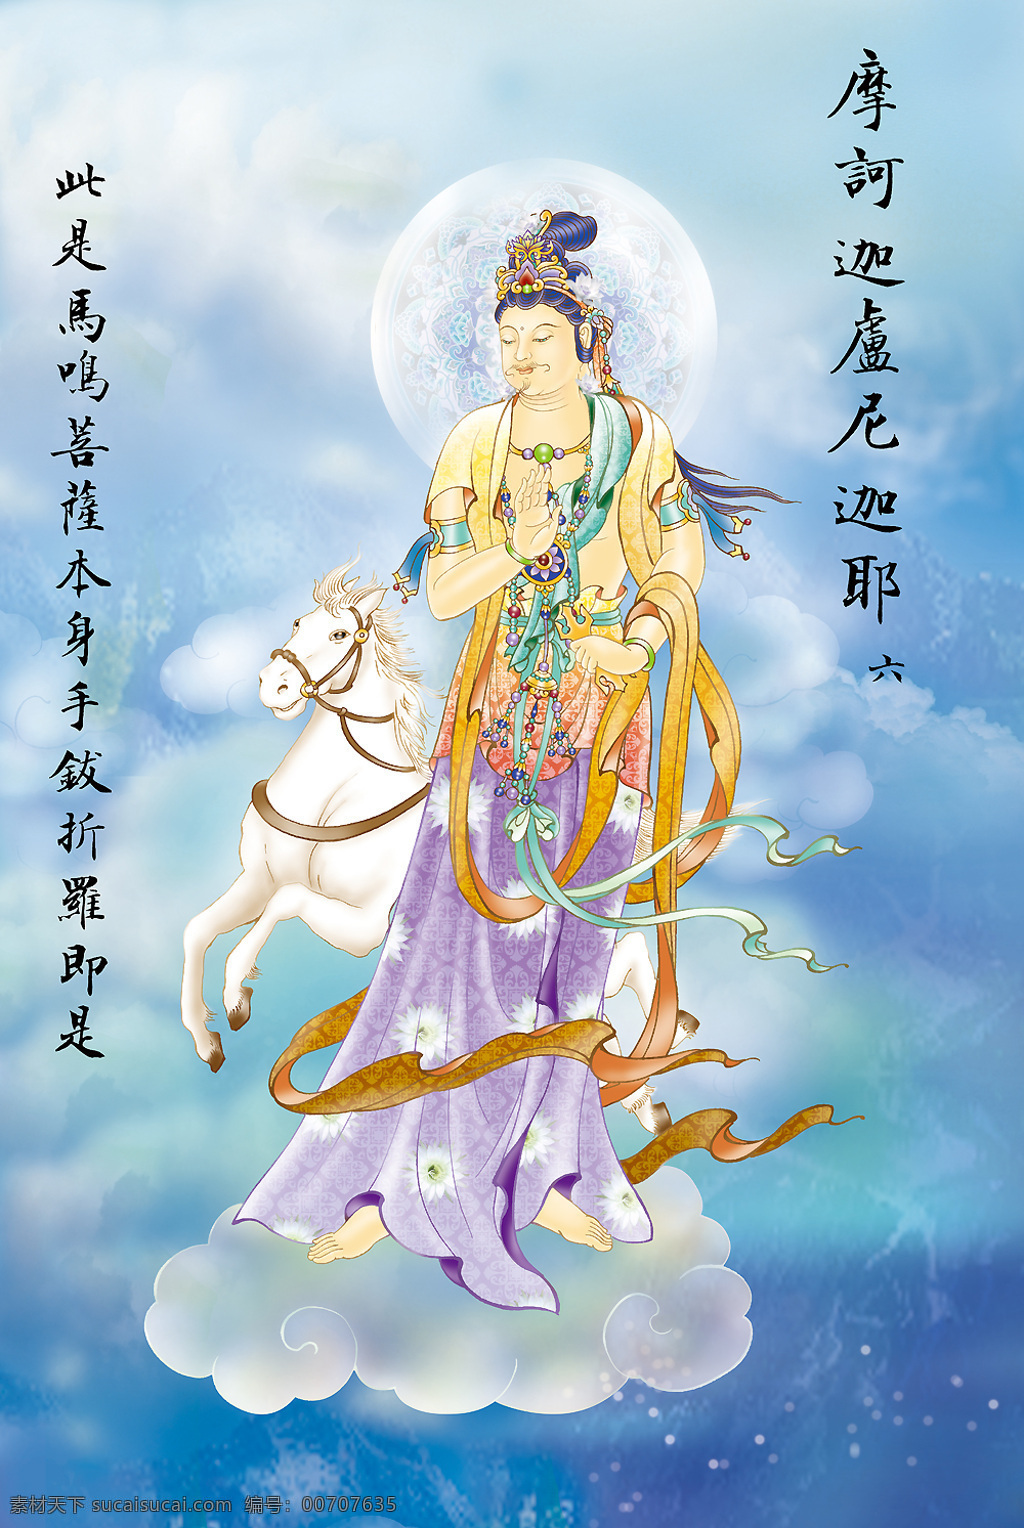 大悲出相图6 佛教 依林法师画 林隆达居士书 台湾 文化艺术 宗教信仰 设计图库